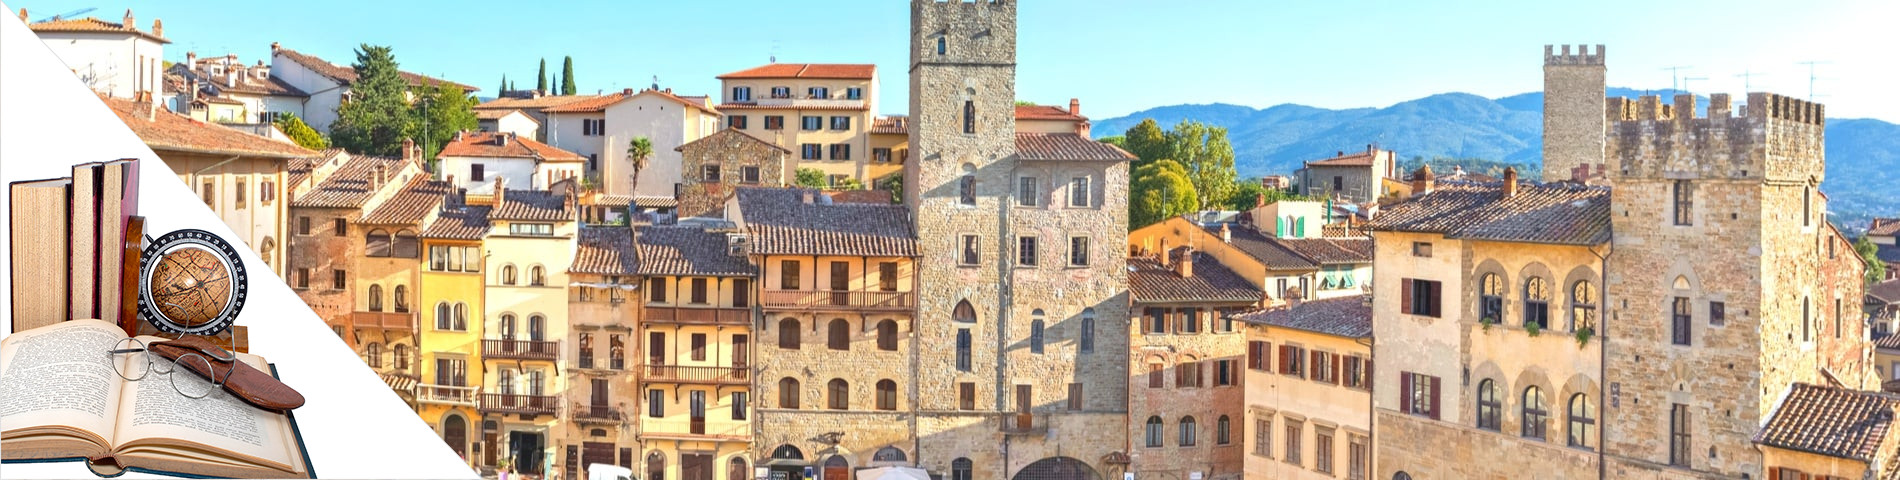 Arezzo - Italiano & Letteratura